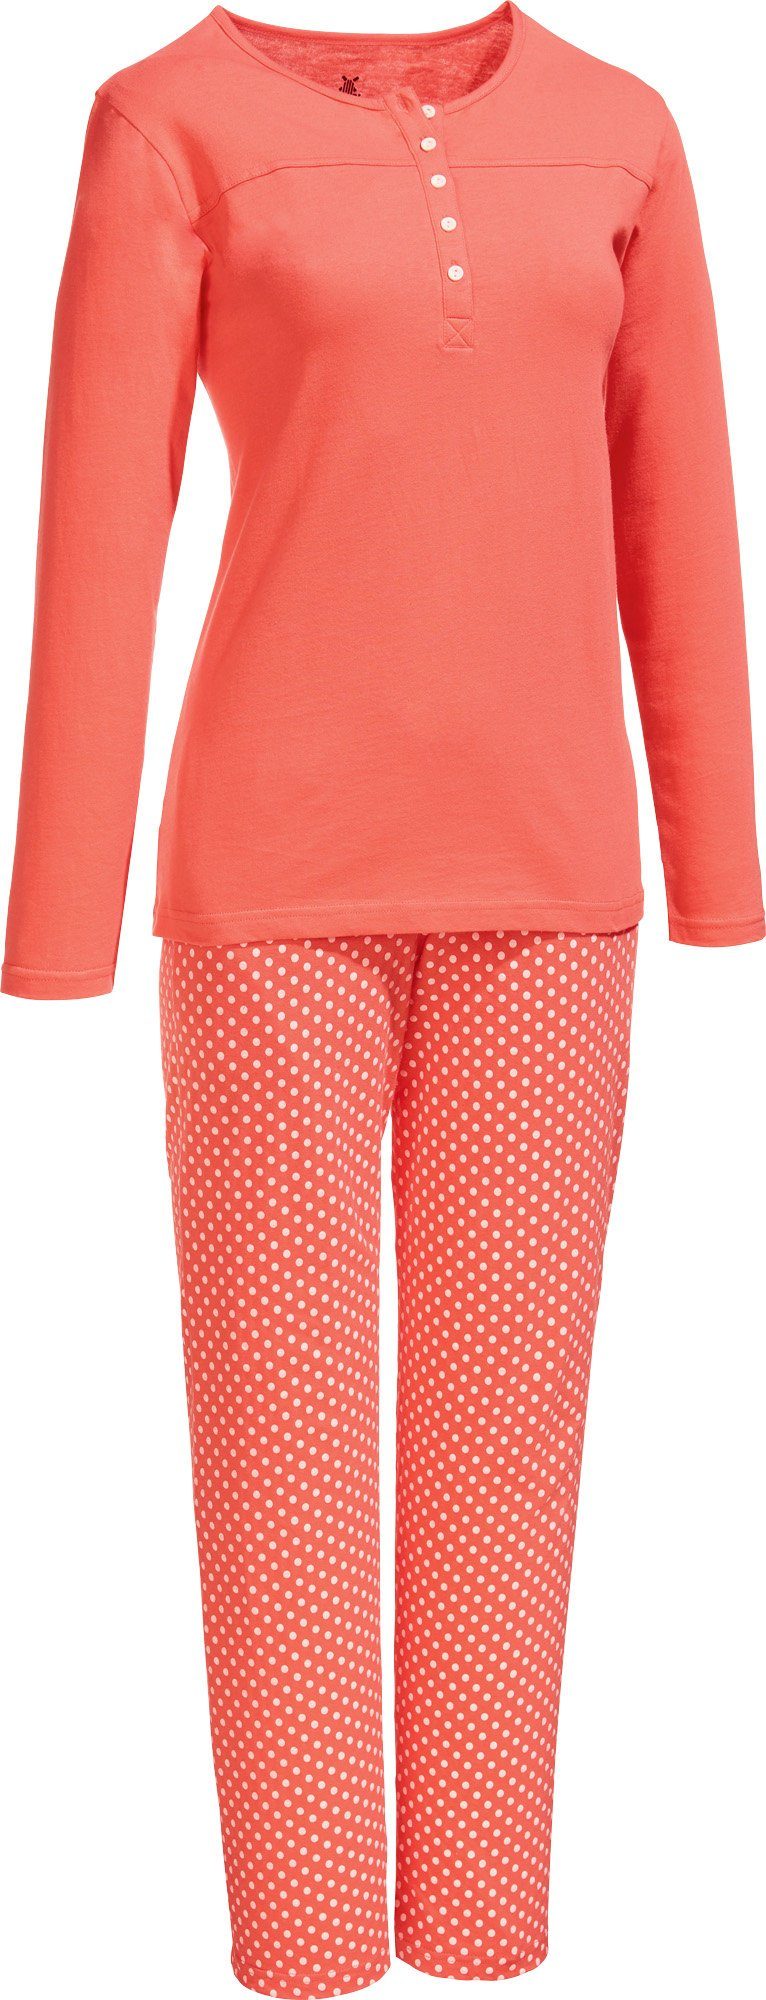 Erwin Müller Pyjama Damen-Schlafanzug Single-Jersey Punkte, Schonwäsche 40  °, Trocknen niedrige Temperatur, Bügeln wenig